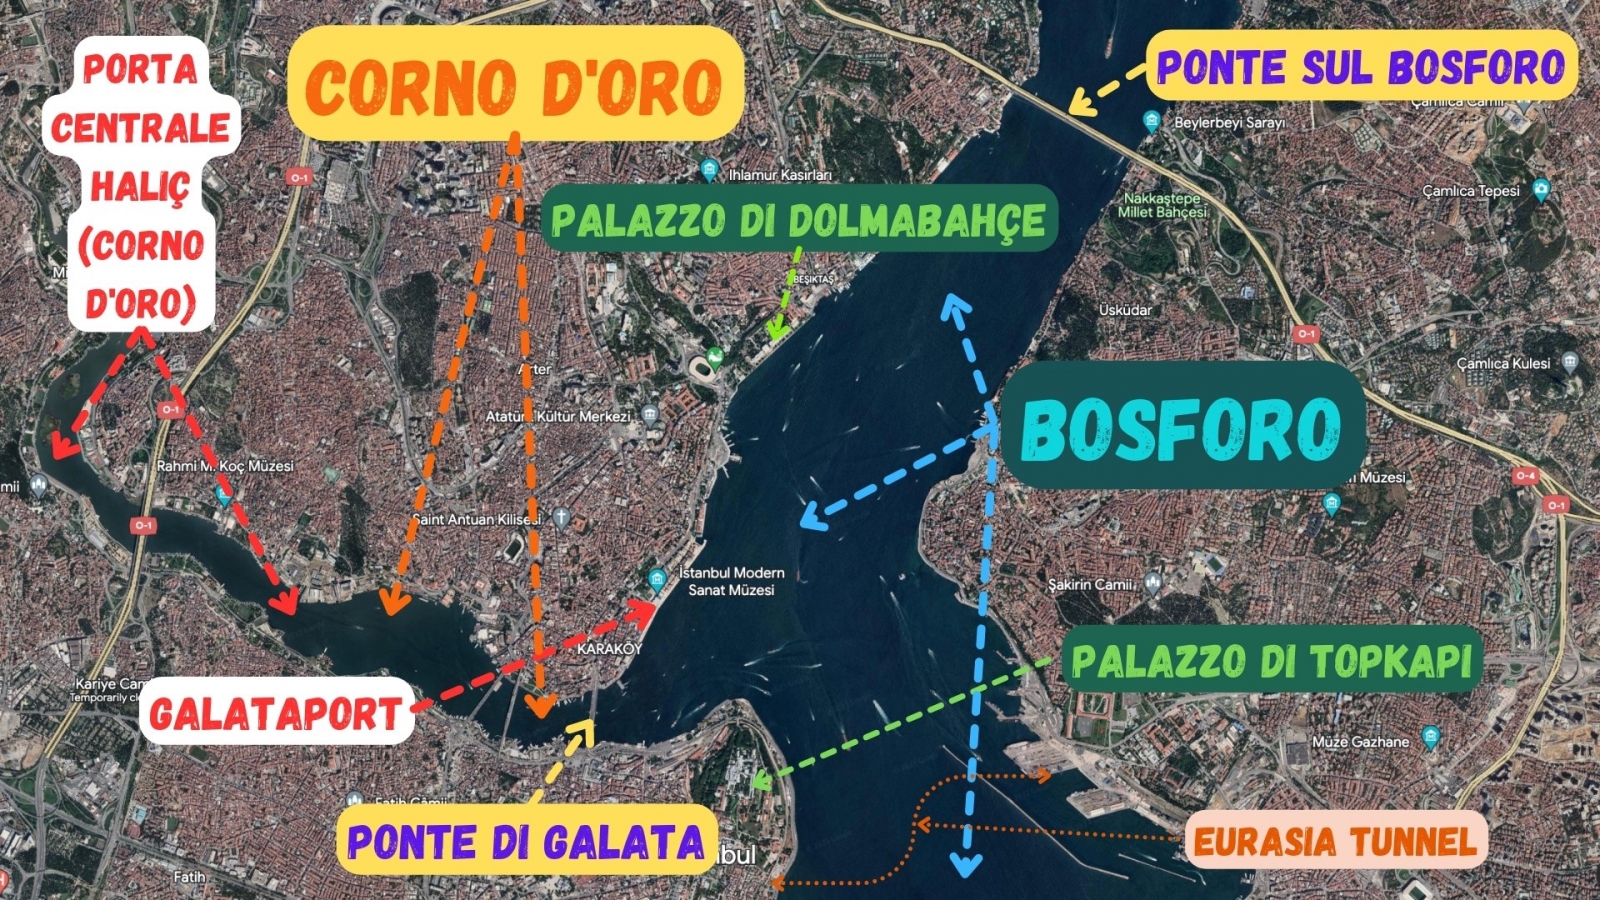 Mappa 1 di alcune attrazioni turistiche lungo lo stretto del Bosforo